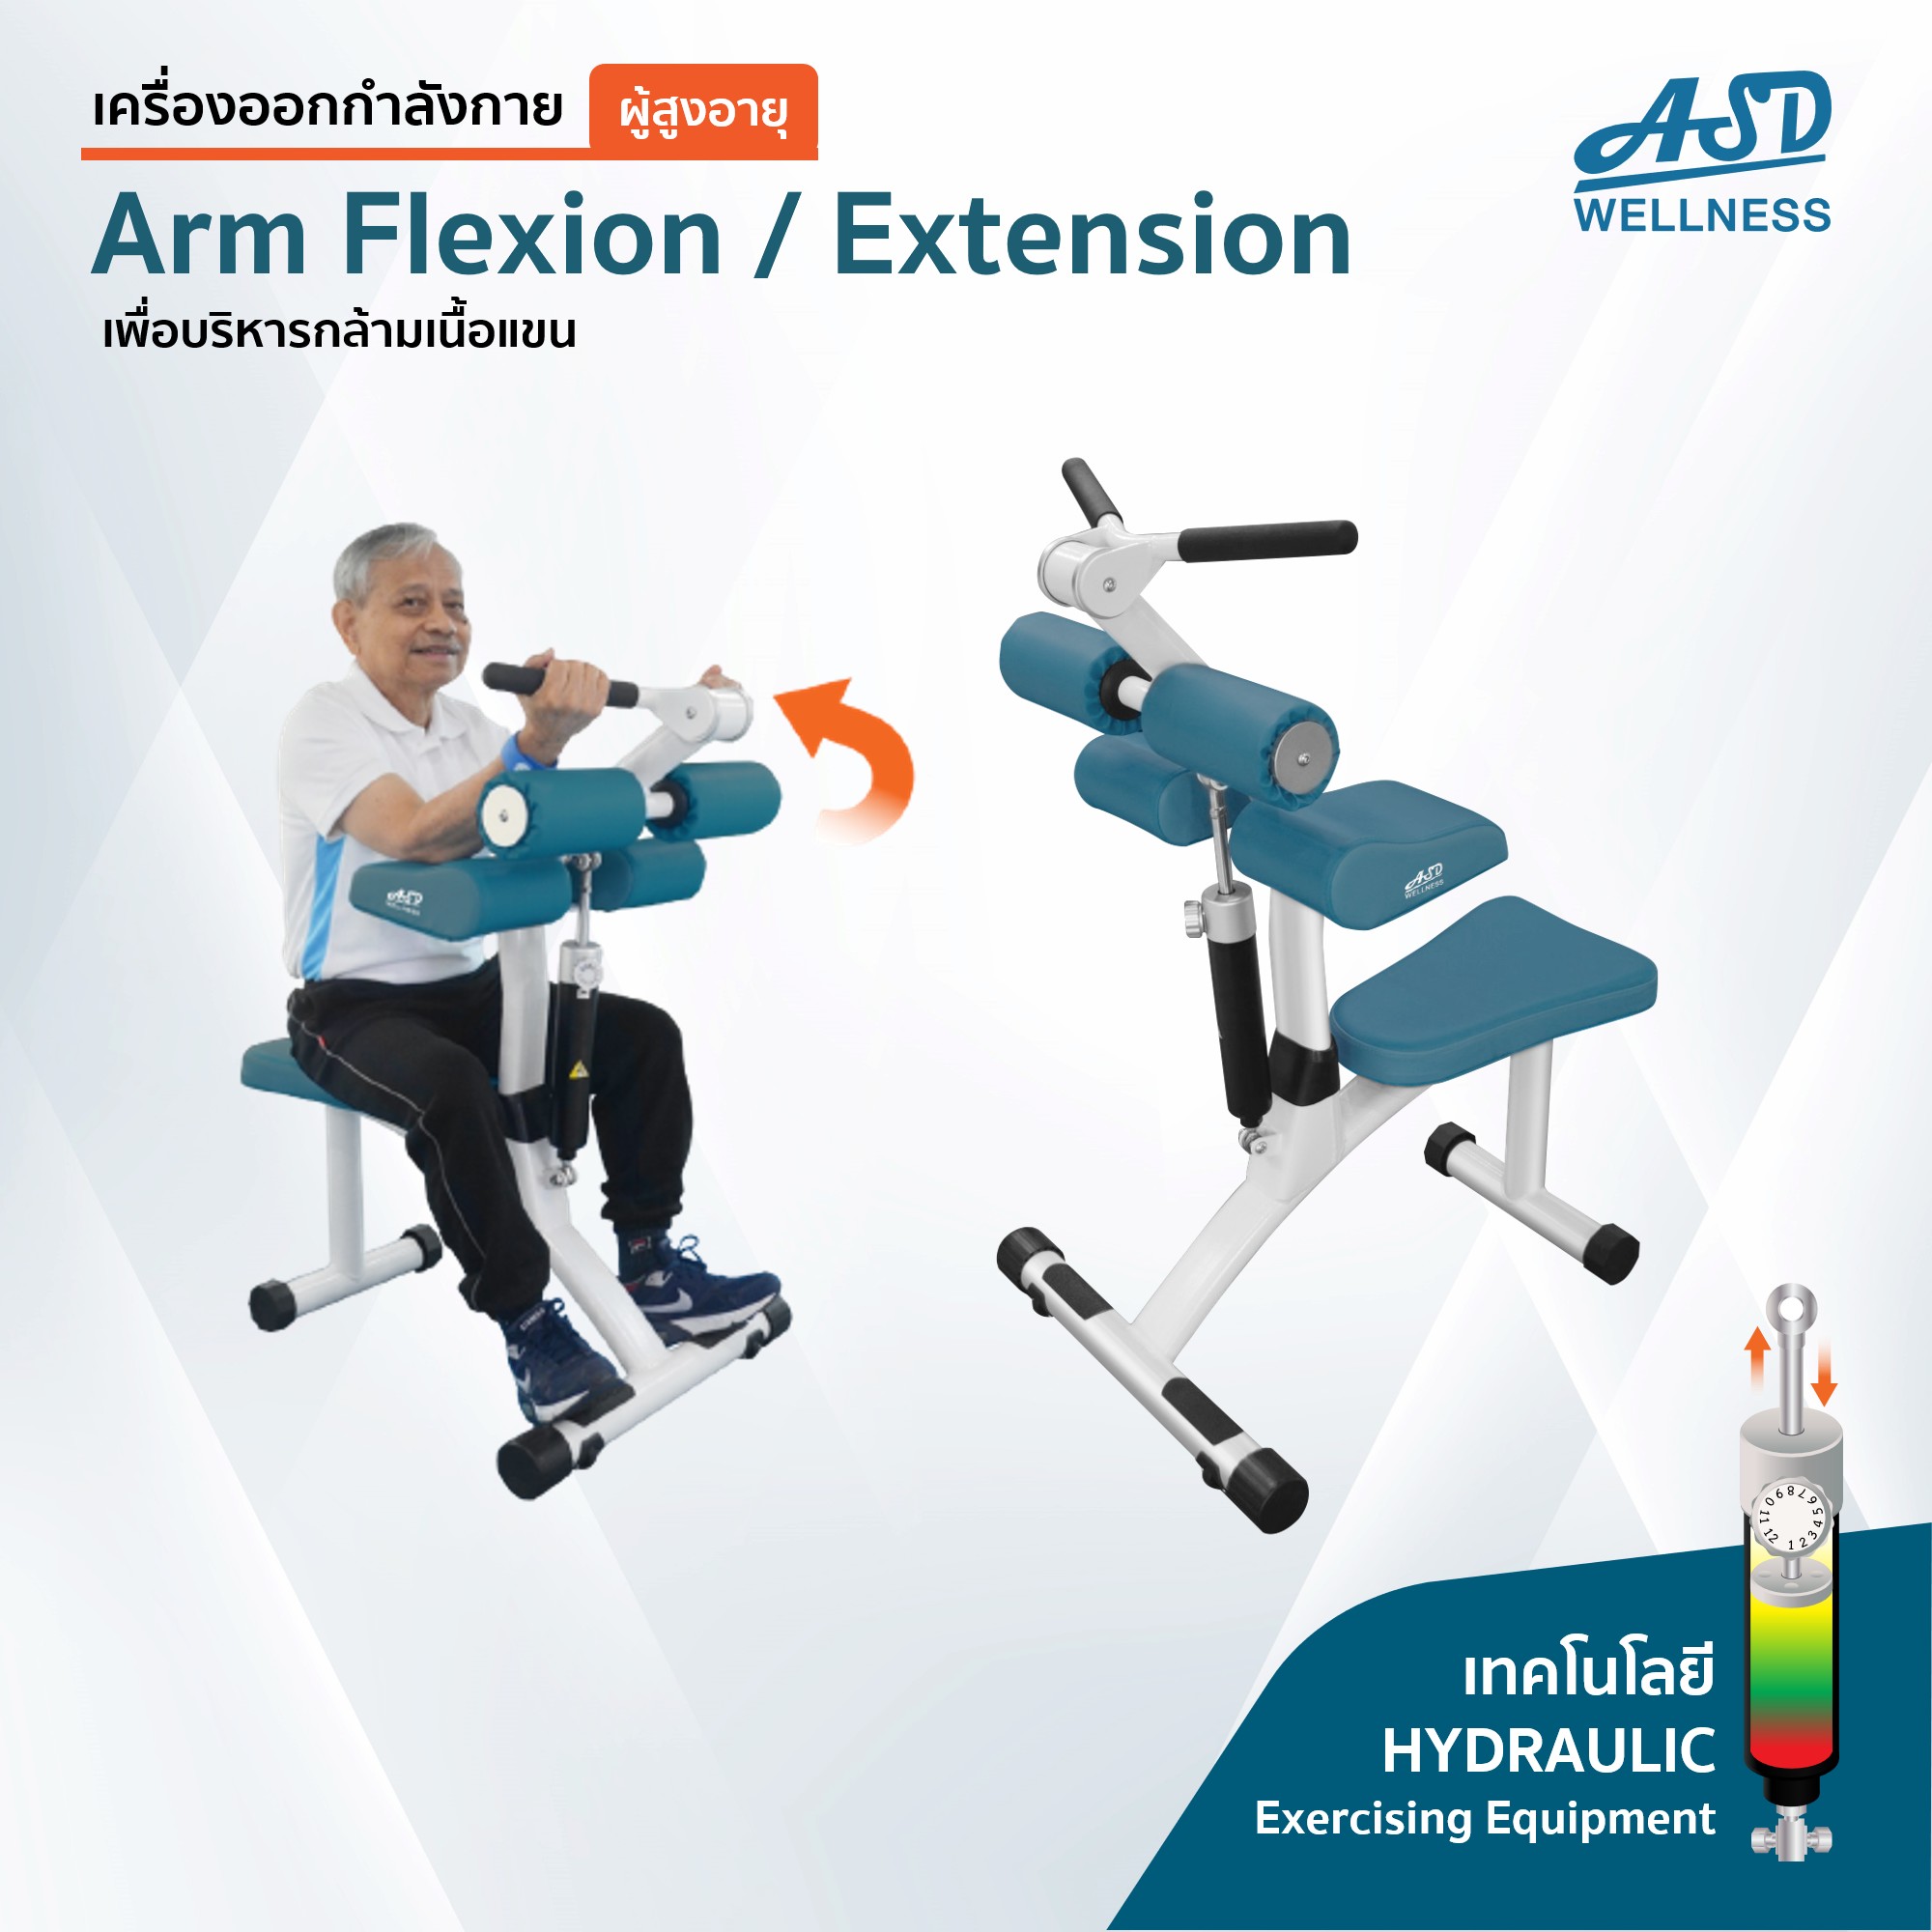 เครื่องออกกำลังกาย สำหรับผู้สูงอายุ เพื่อบริหารกล้ามเนื้อแขน Arm Flexion Extension อุปกรณ์ออกกำลังกาย สำหรับผู้สูงอายุ เพื่อบริหารกล้ามเนื้อแขน เครื่องออกกำลังกายASD อุปกรณ์ออกกำลังการASD เครื่องออกกำลังกายasd อุปกรณ์ออกกำลังกายasd เครื่องออกกำลังกายผู้สูงวัย อุปกรณ์ออกกำลังกายผู้สูงวัย เครื่องออกกำลังกายผู้สูงอายุ อุปกรณ์ออกกำลังกายผู้สูงอายุ ระบบแรงต้าน ไอโซคิเนติก ไฮโดรลิค ไฮโดรลิก Hydraulic Isokinetic